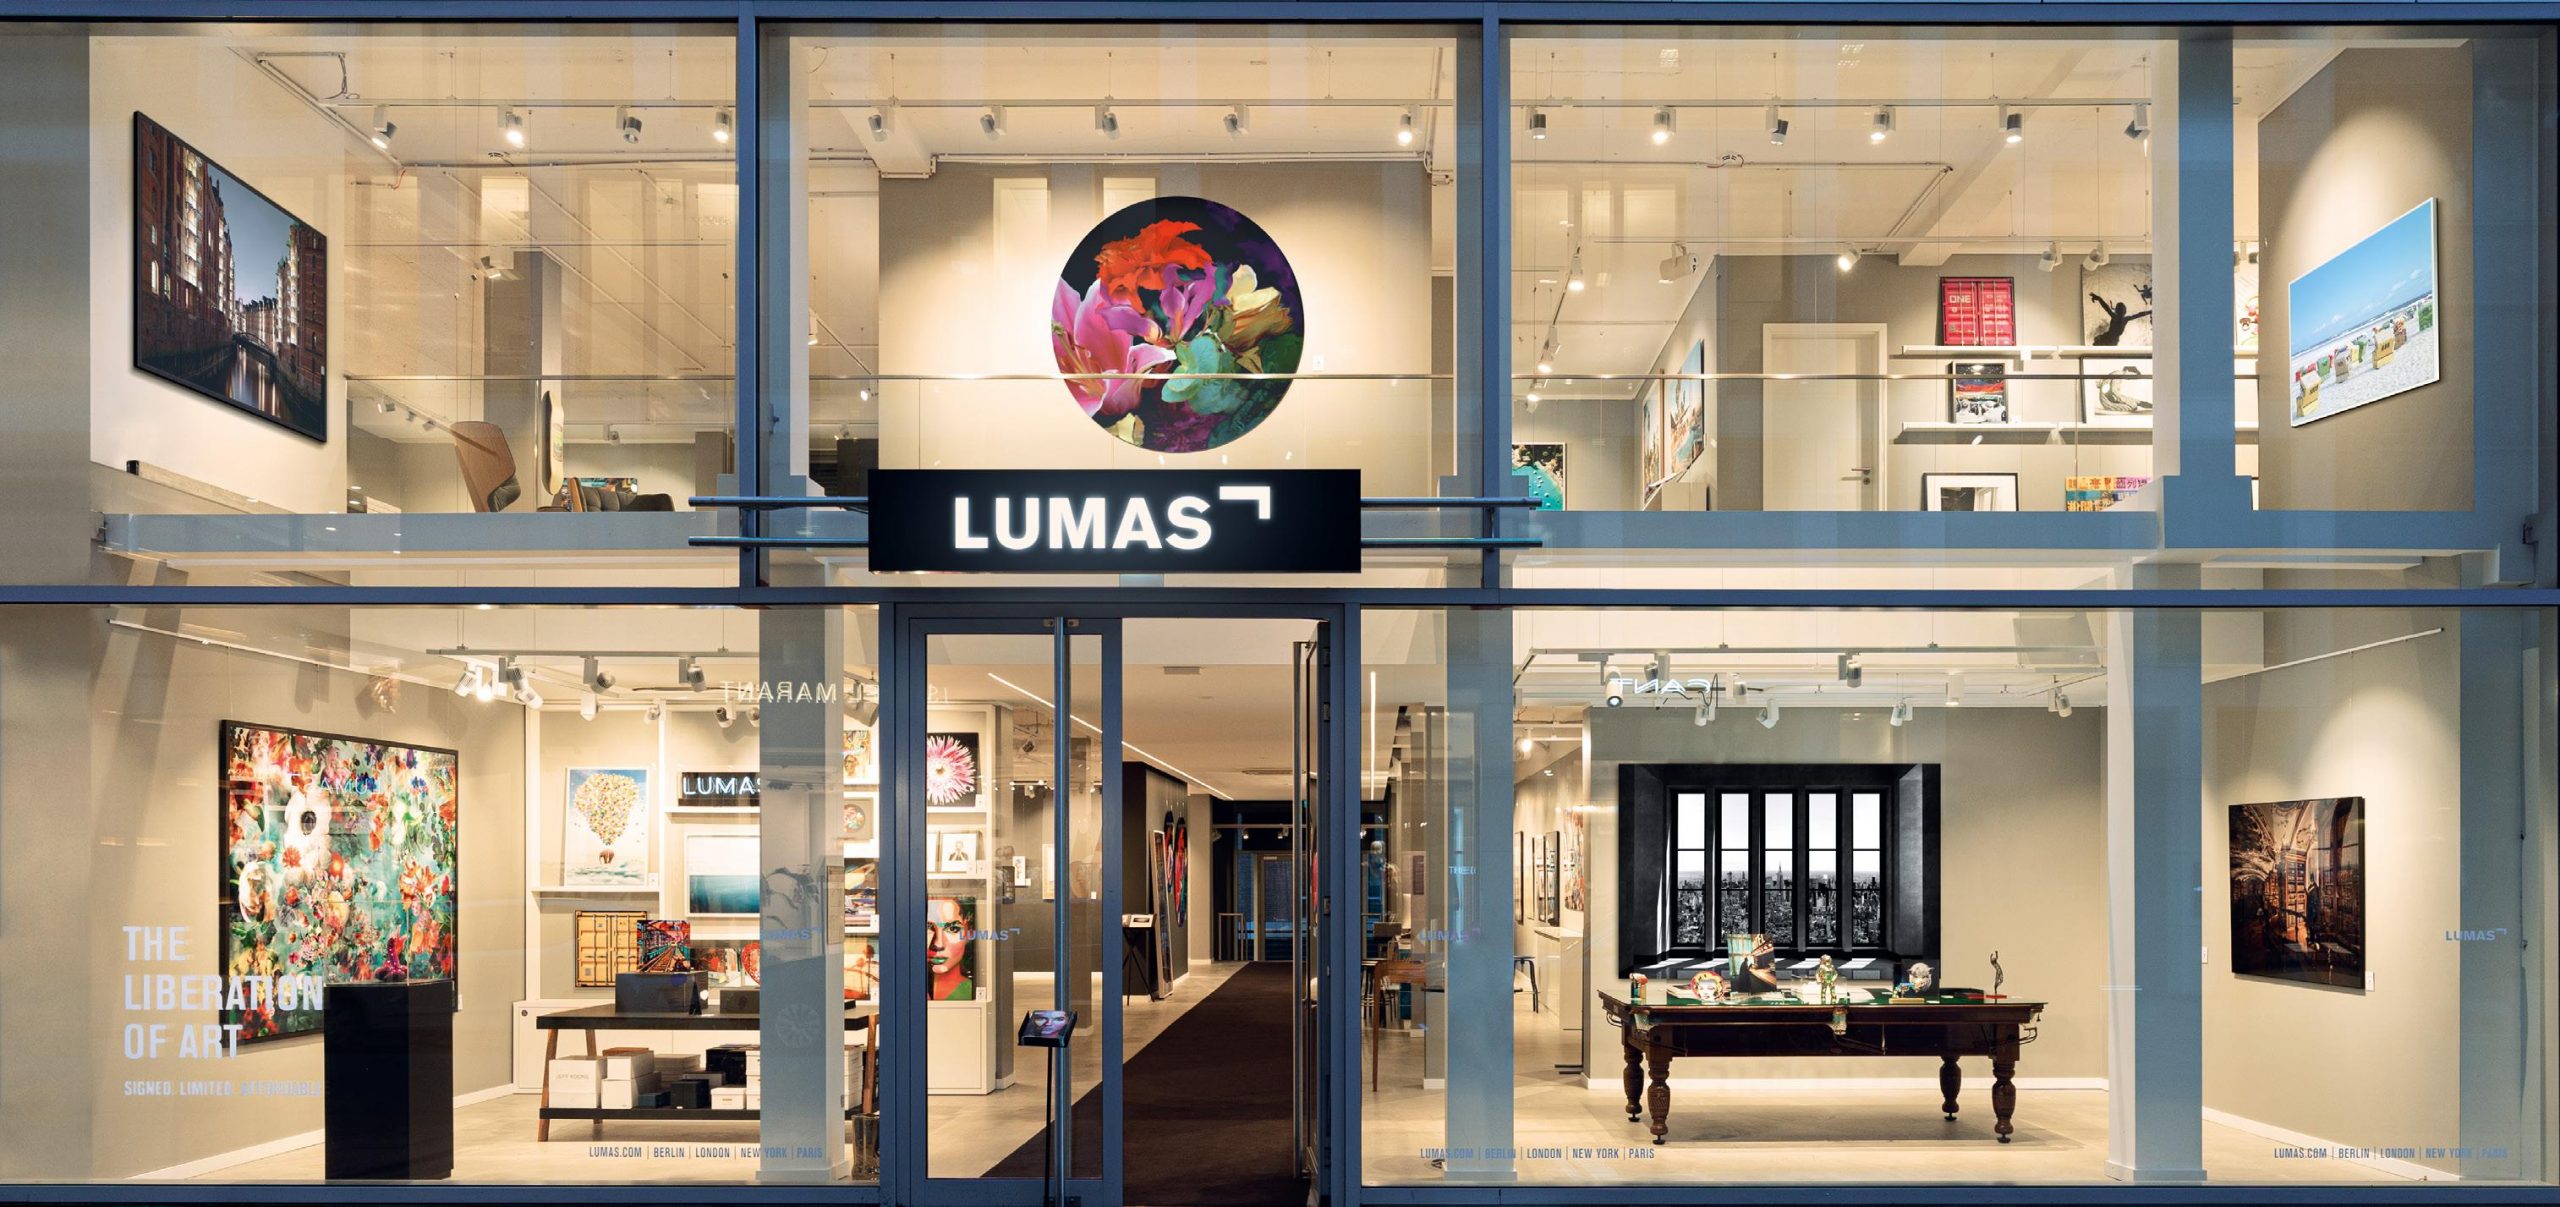 LUMAS Galerie Hamburg